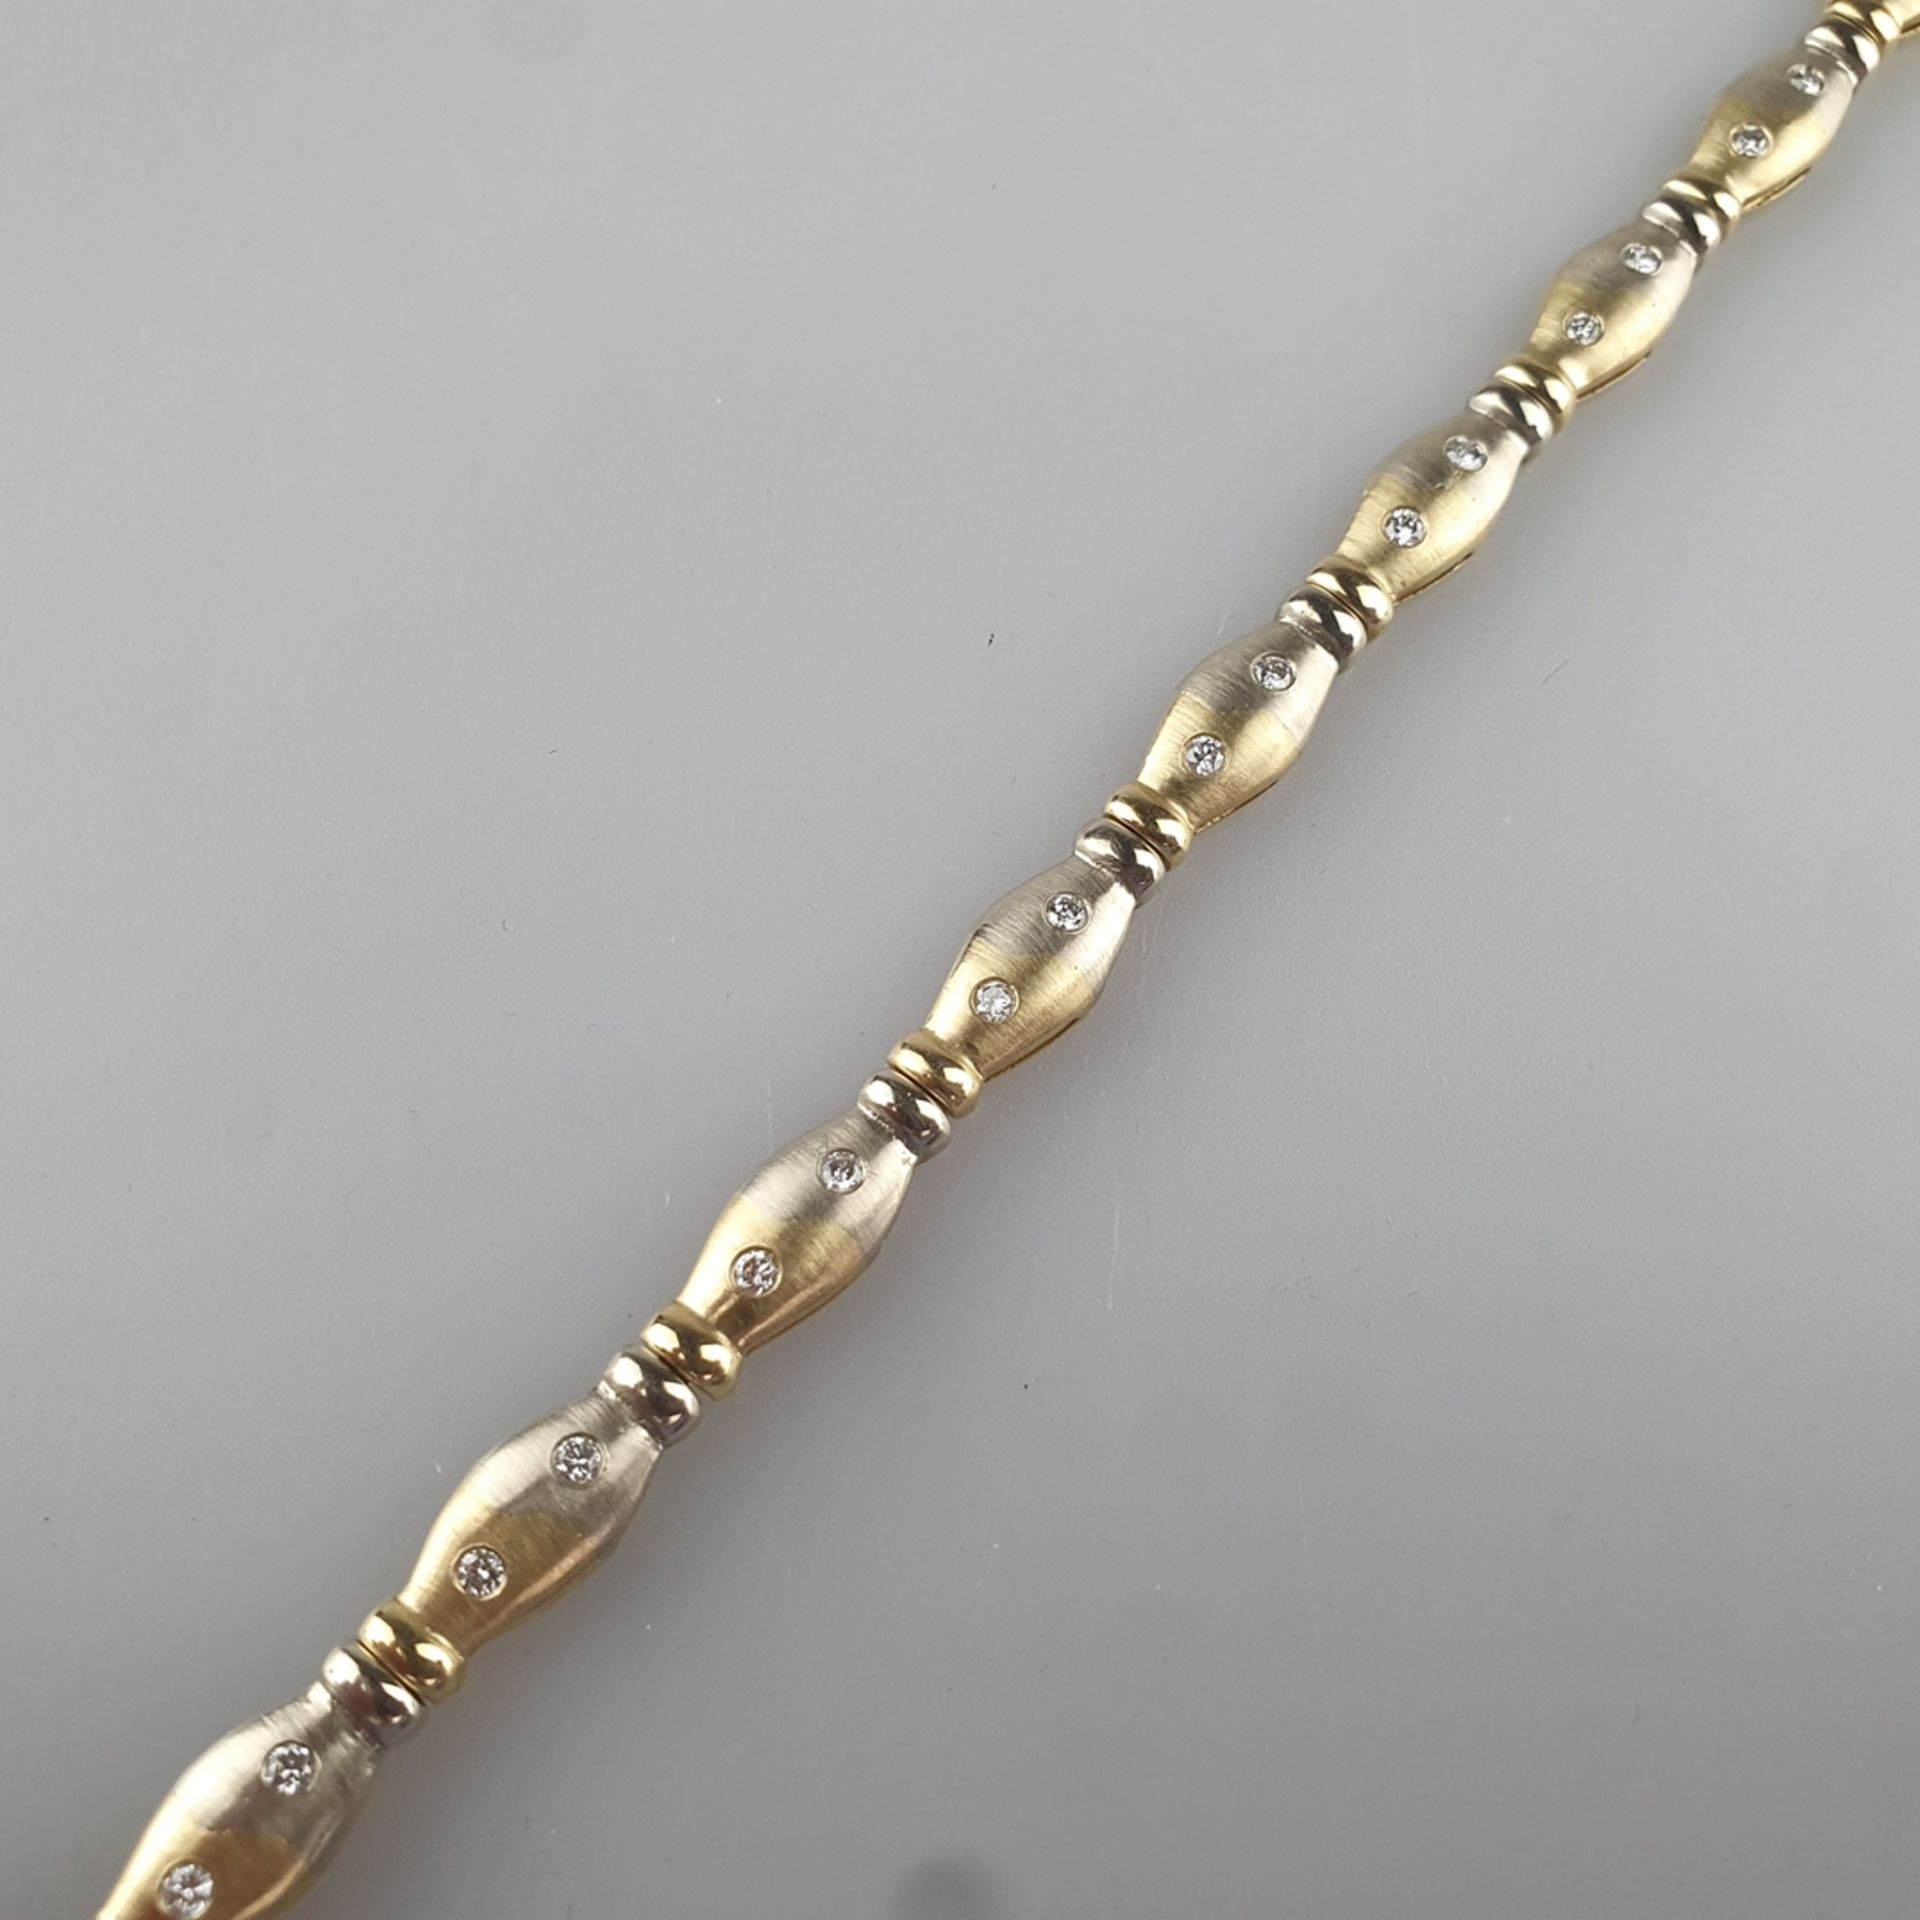 Bicolor-Diamantarmband - Gelb-/Weißgold 585/000 (14 K), gestempelt, ca. 6 mm breit, 11 Glieder bese - Image 3 of 5